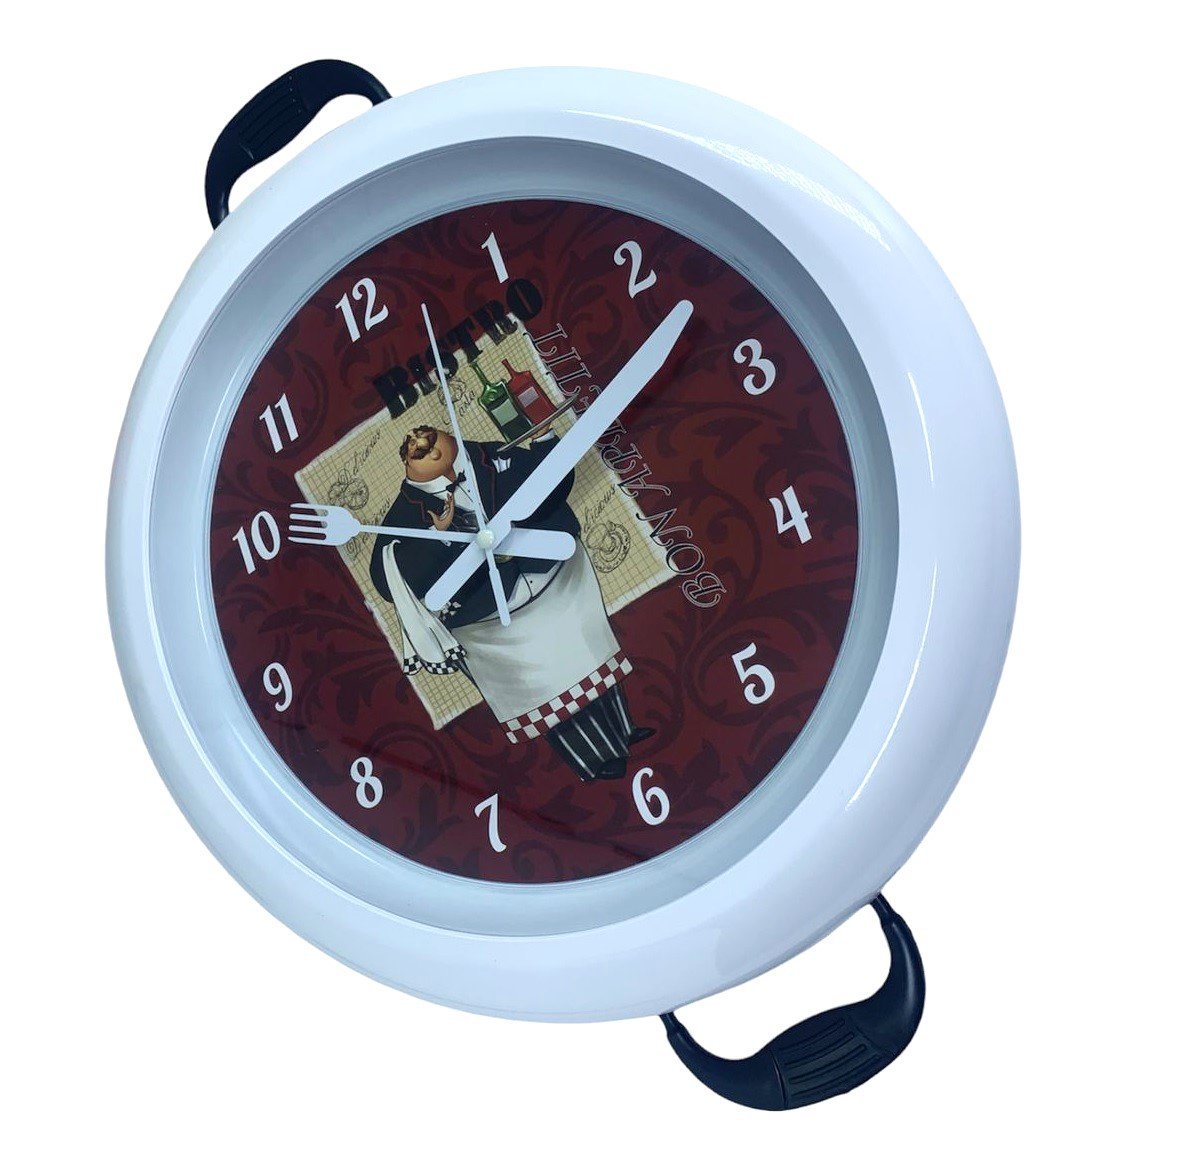 Relógio Parede Cozinha Decorativo Moderno Redondo Panela Bco Quartz Relógio Decorativo, Relógio para - 5